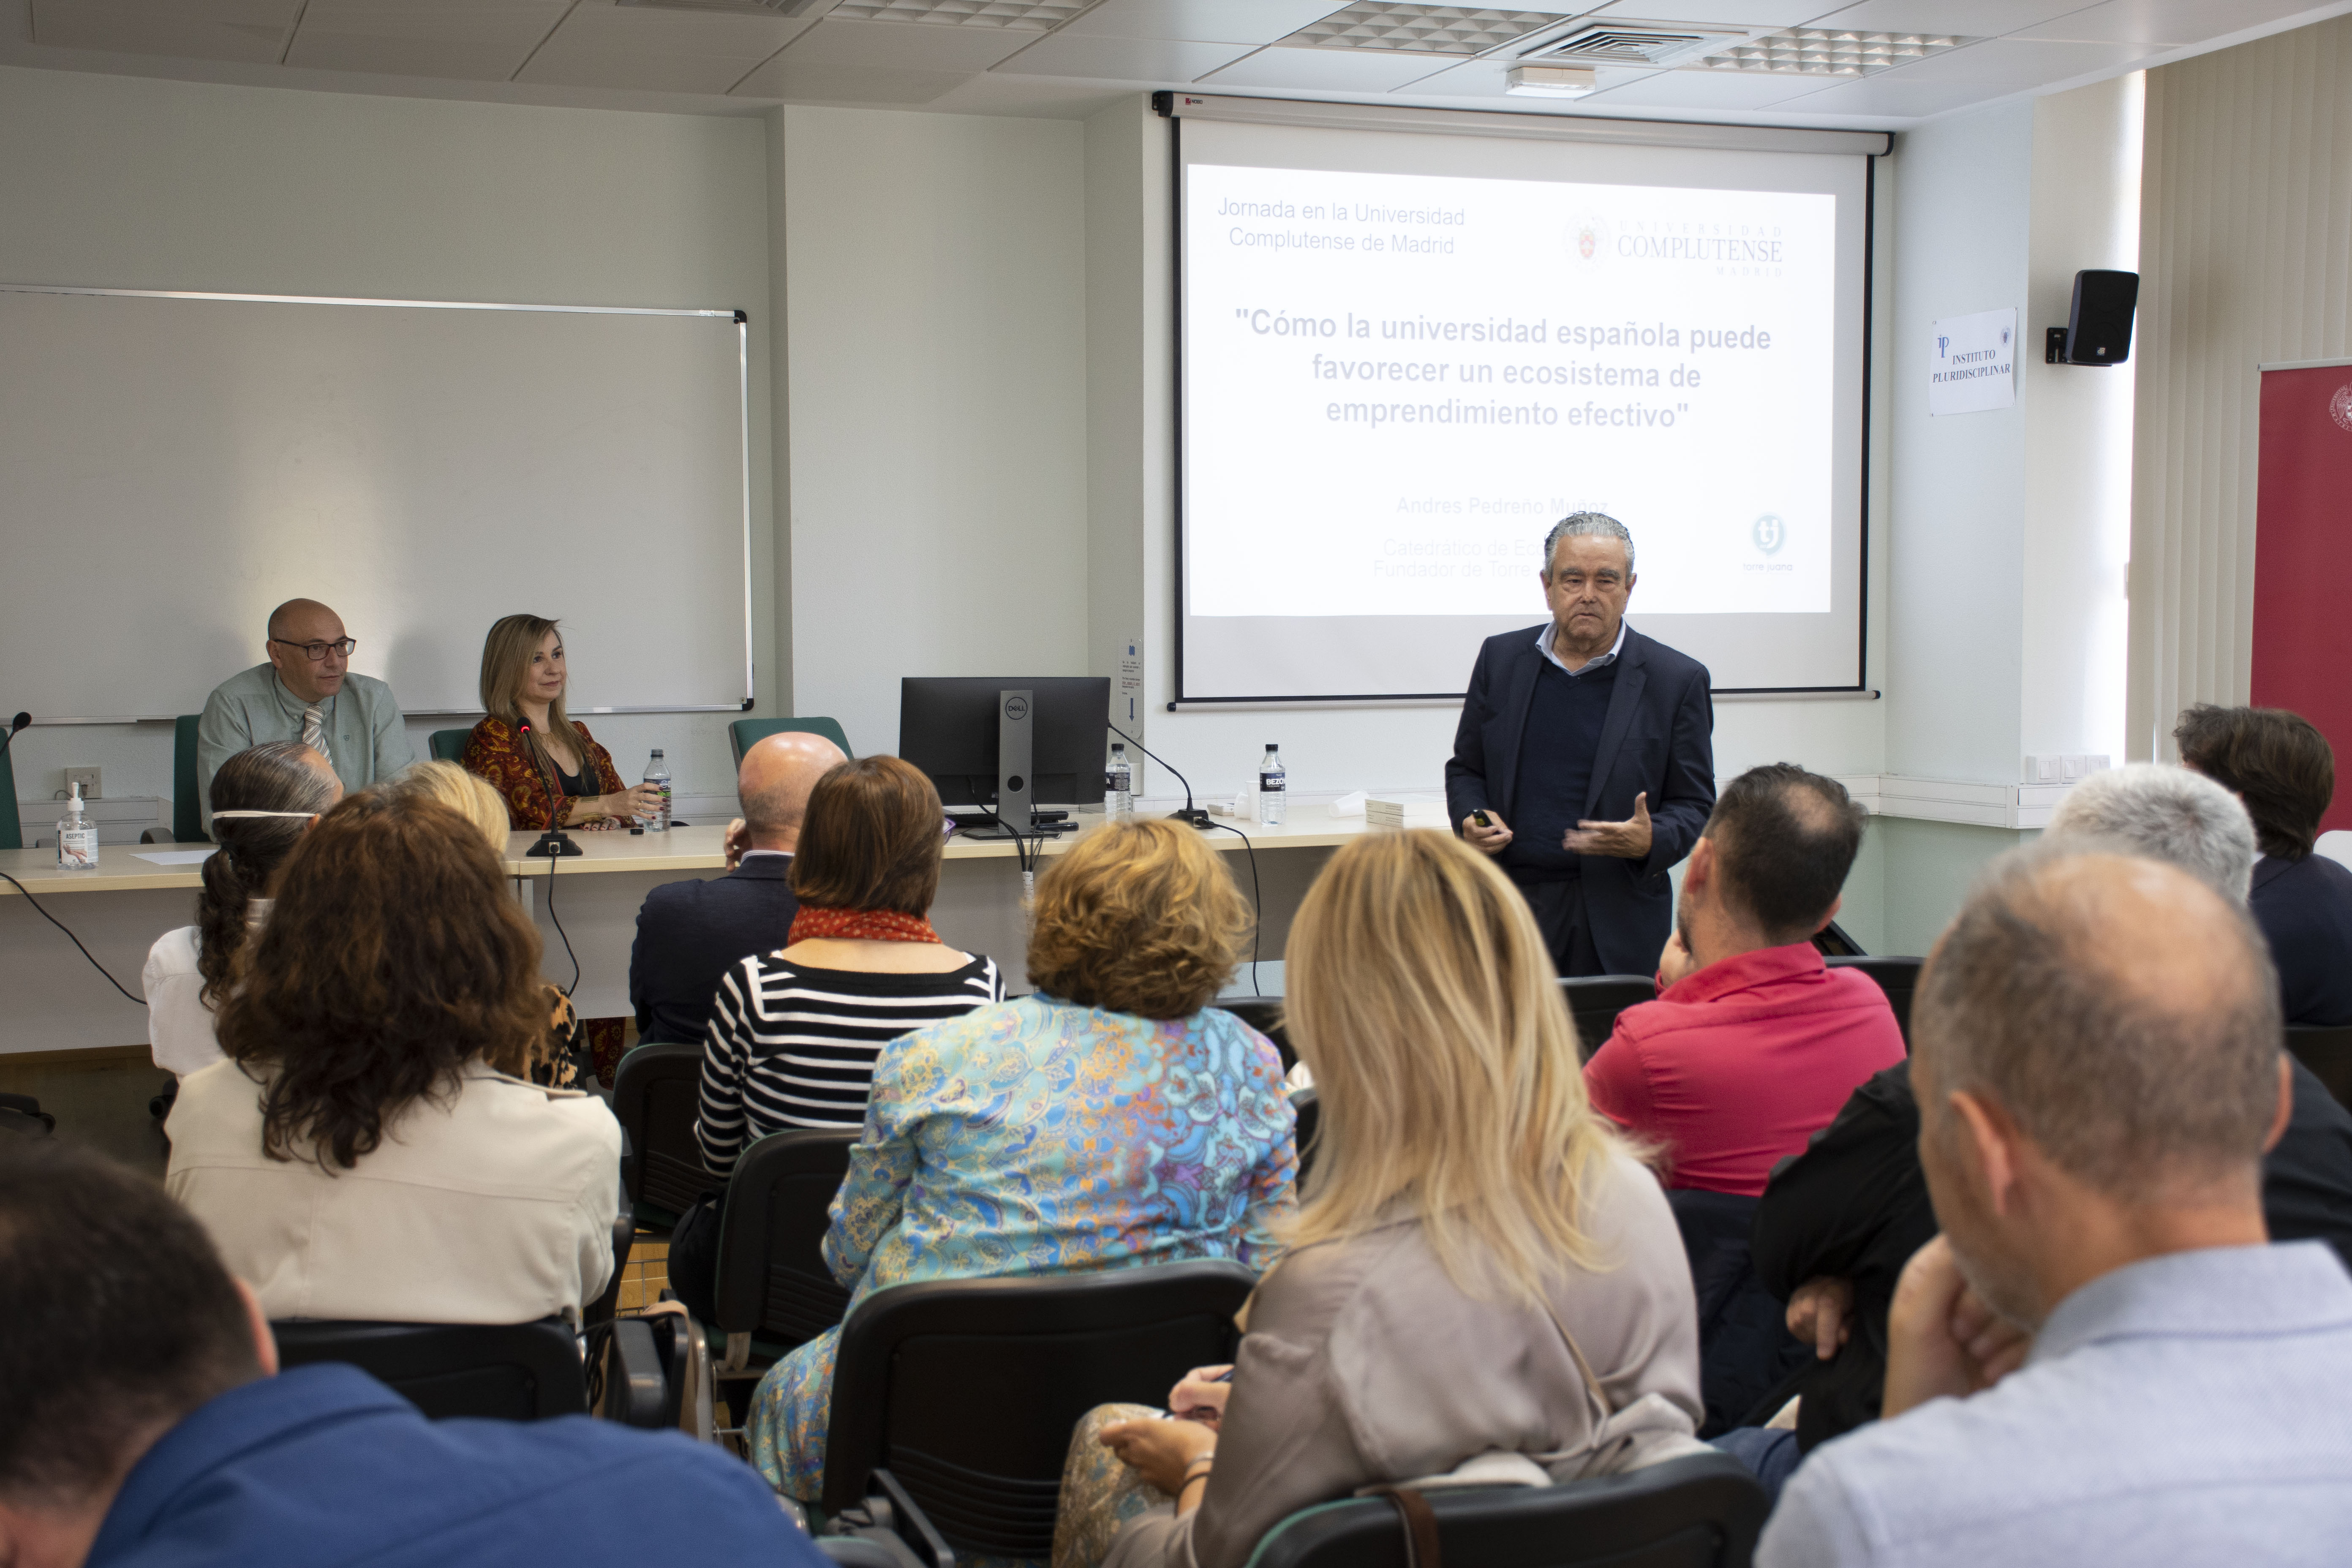 Sesión "Cómo la universidad española puede favorecer un ecosistema de emprendimiento efectivo" Don Andrés Pedreño